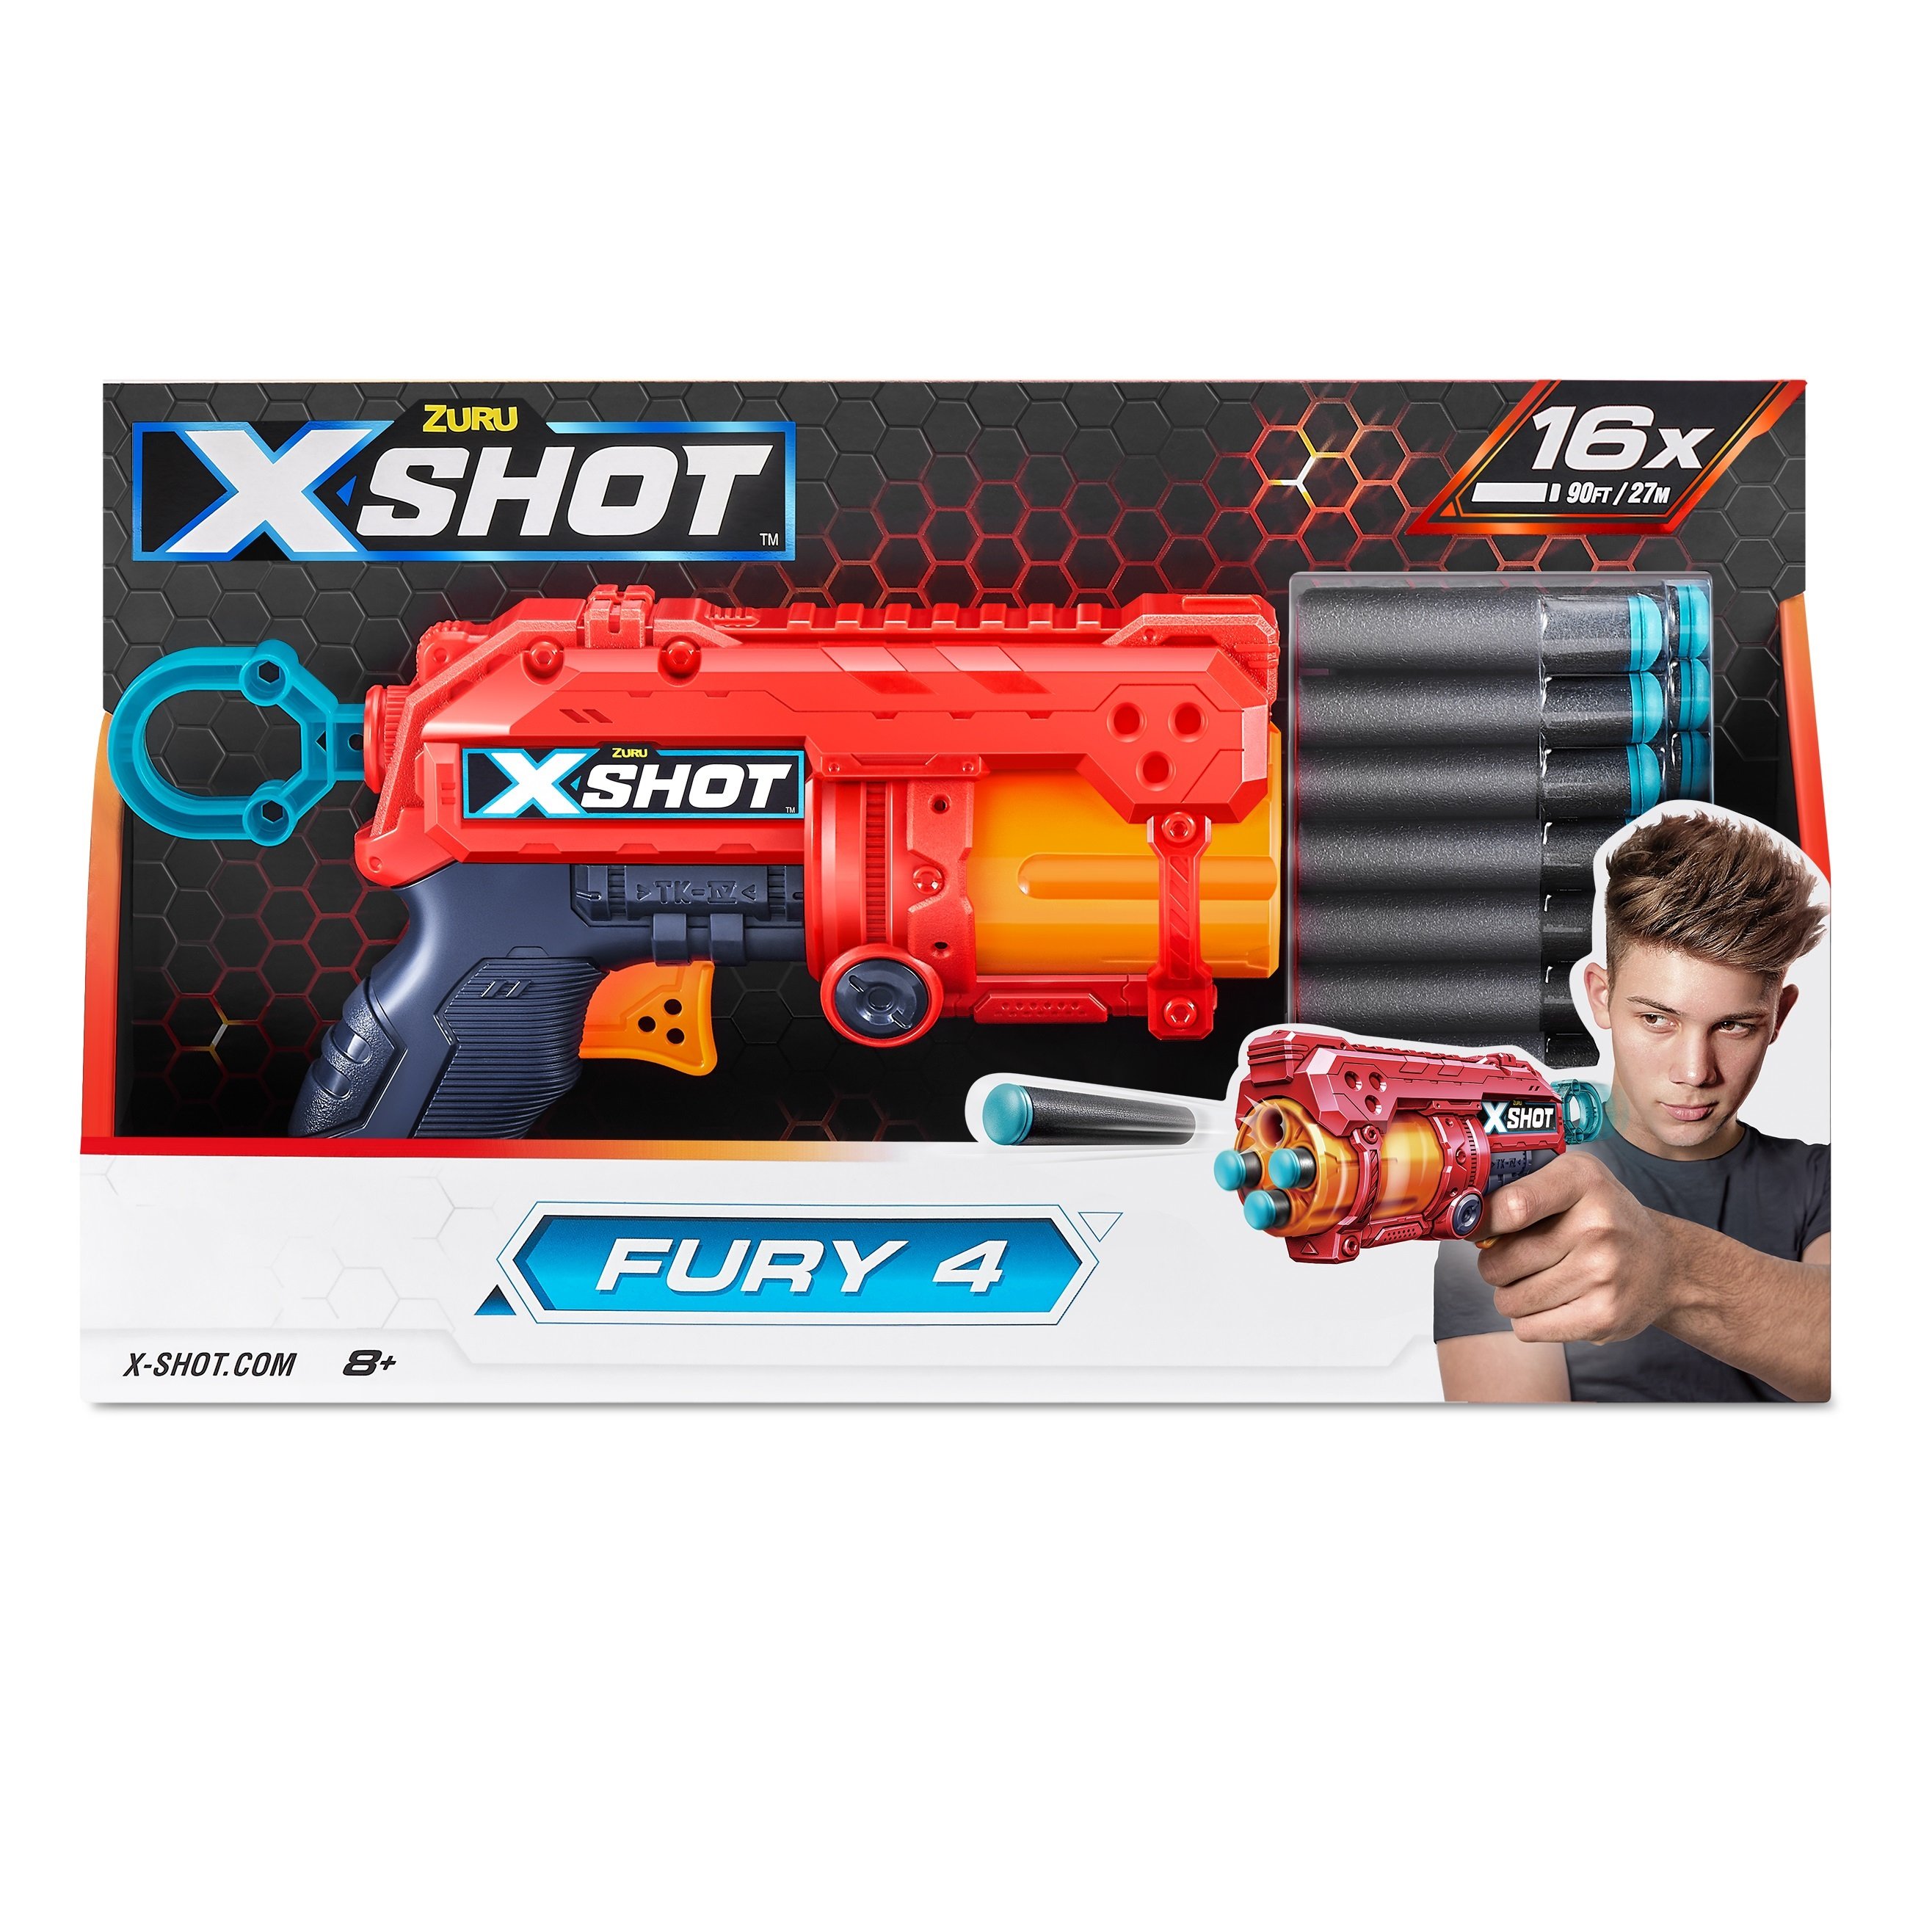 Скорострельный бластер Zuru X-Shot Red Excel Fury 4, 16 патронов (36377R) - фото 3